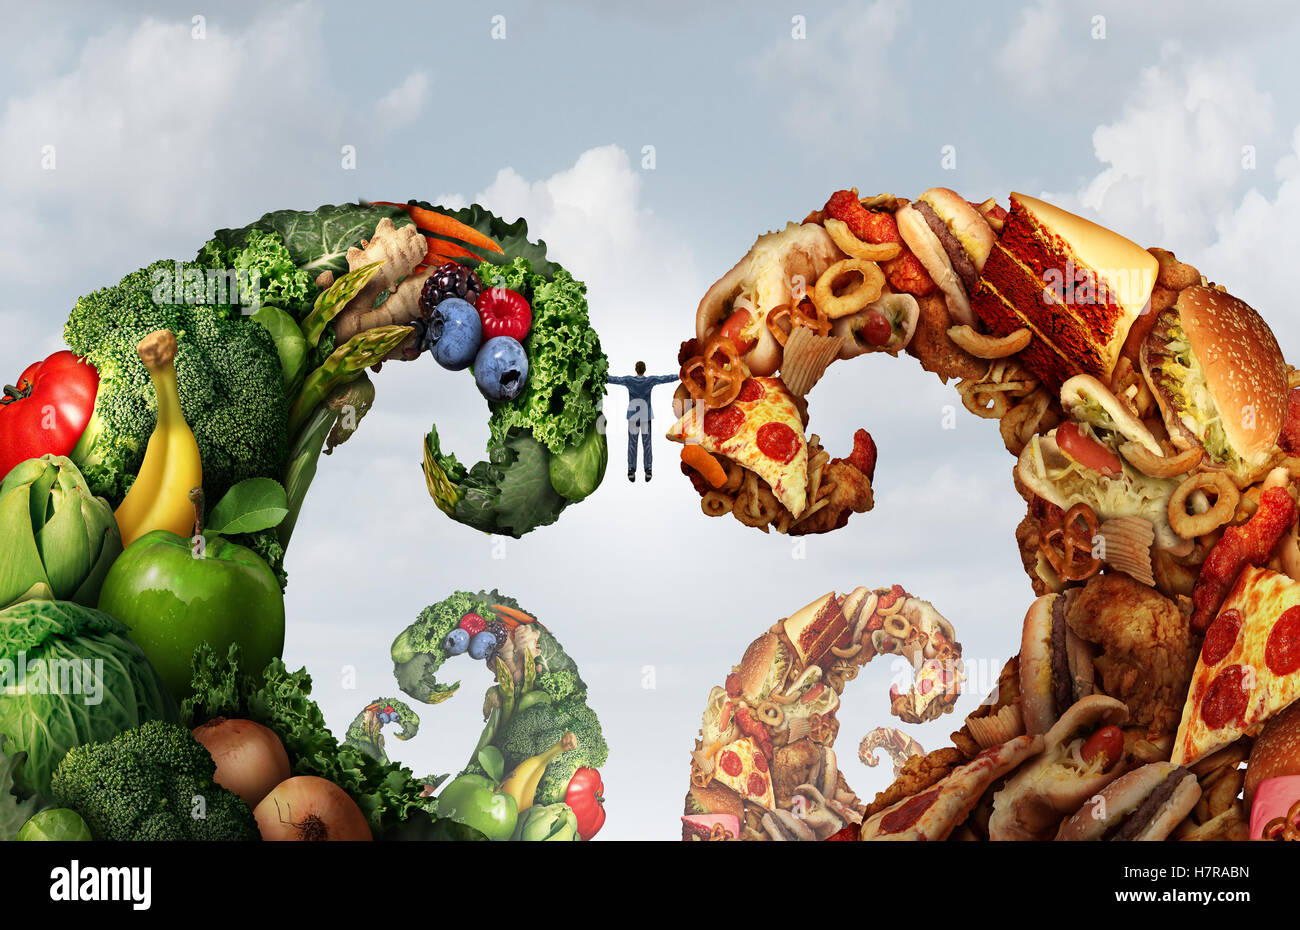 Zwischen Ernährung Lebensmittel und Ernährung Wahl Kampf als eine Person, zwei Wellen von Obst und Gemüse und Junk-Food in eine 3D Darstellung Stil als Symbol für Essen und Diäten Herausforderungen. Stockfoto